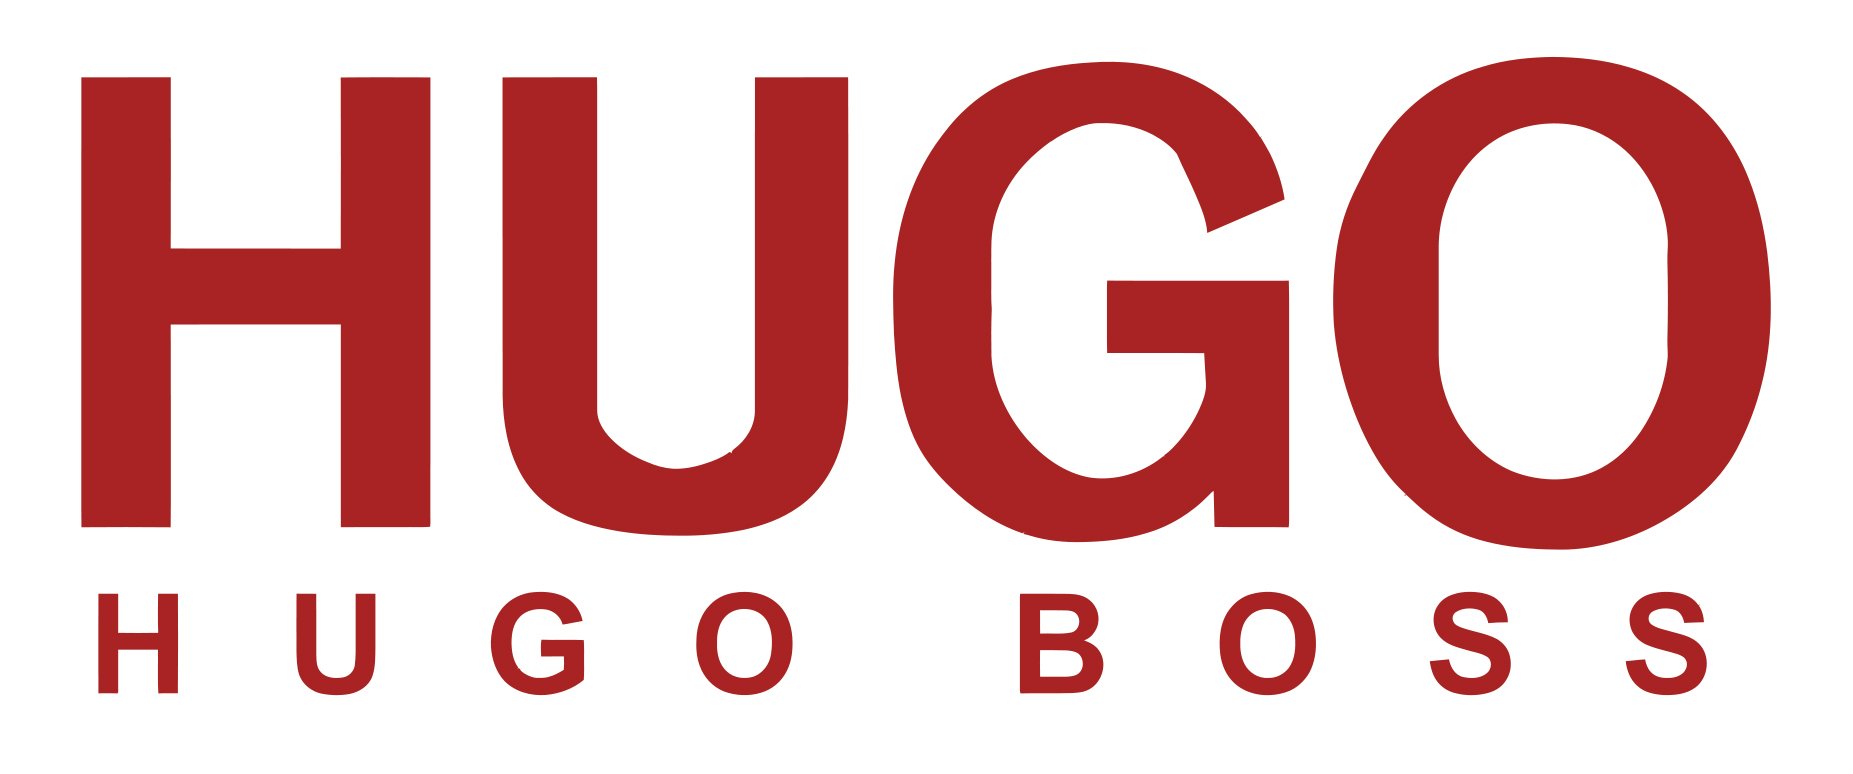 hugo boss brands